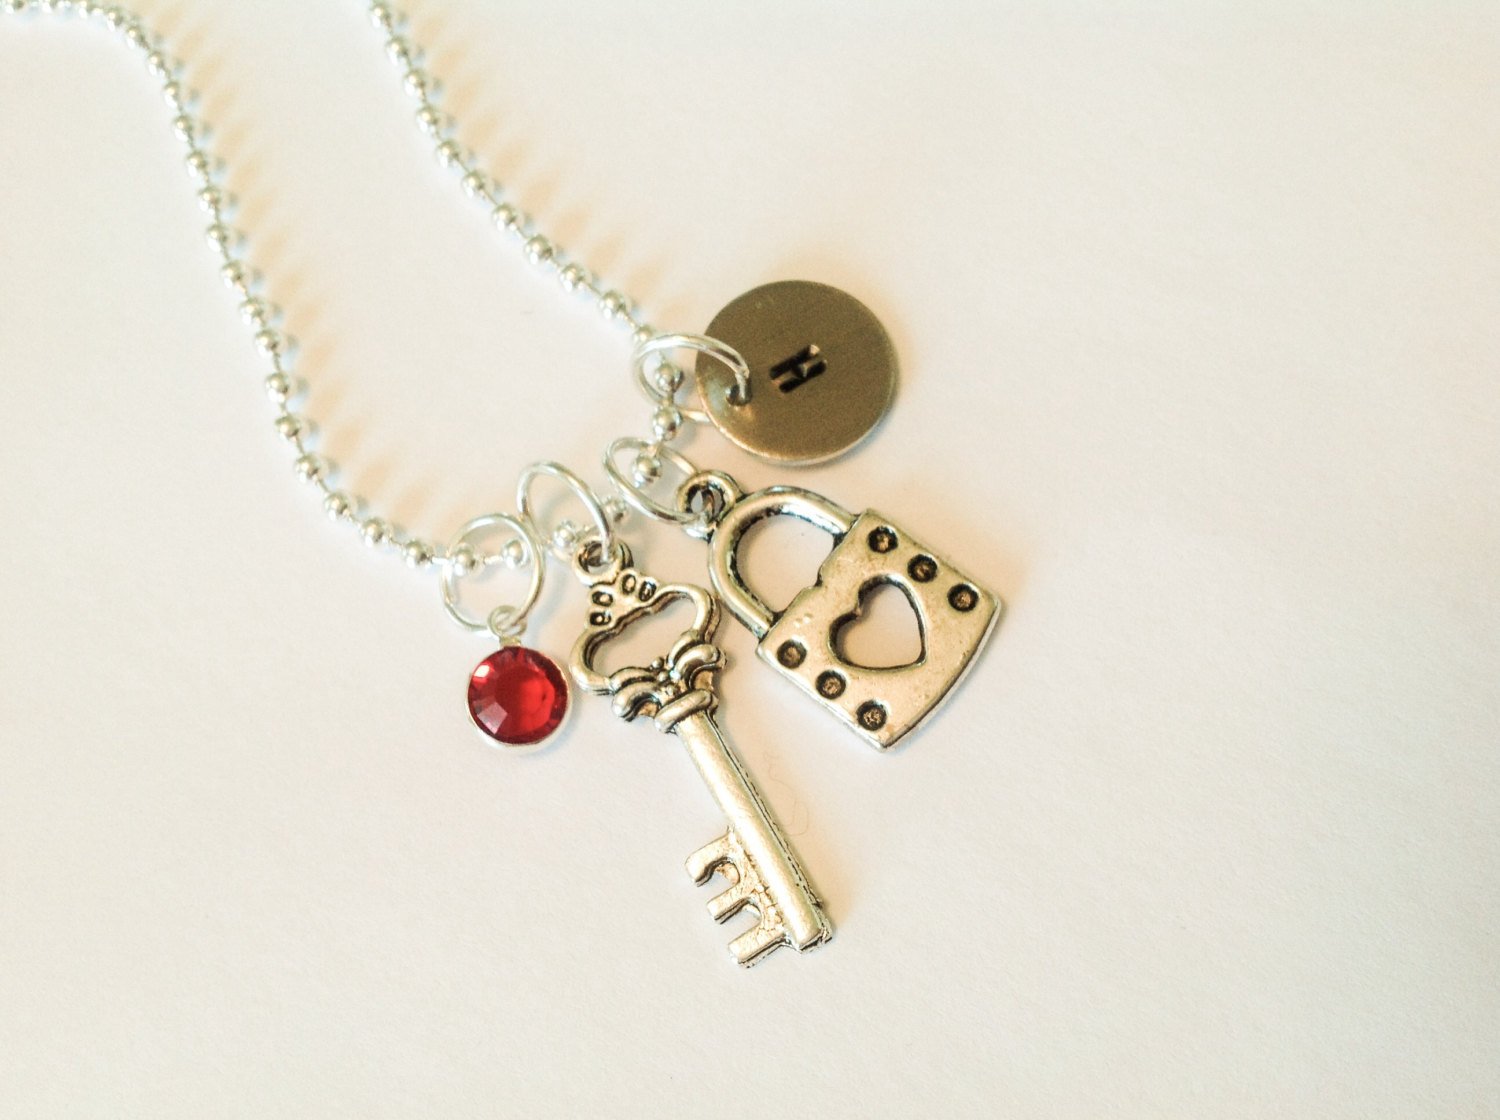 tiffany key and lock necklace